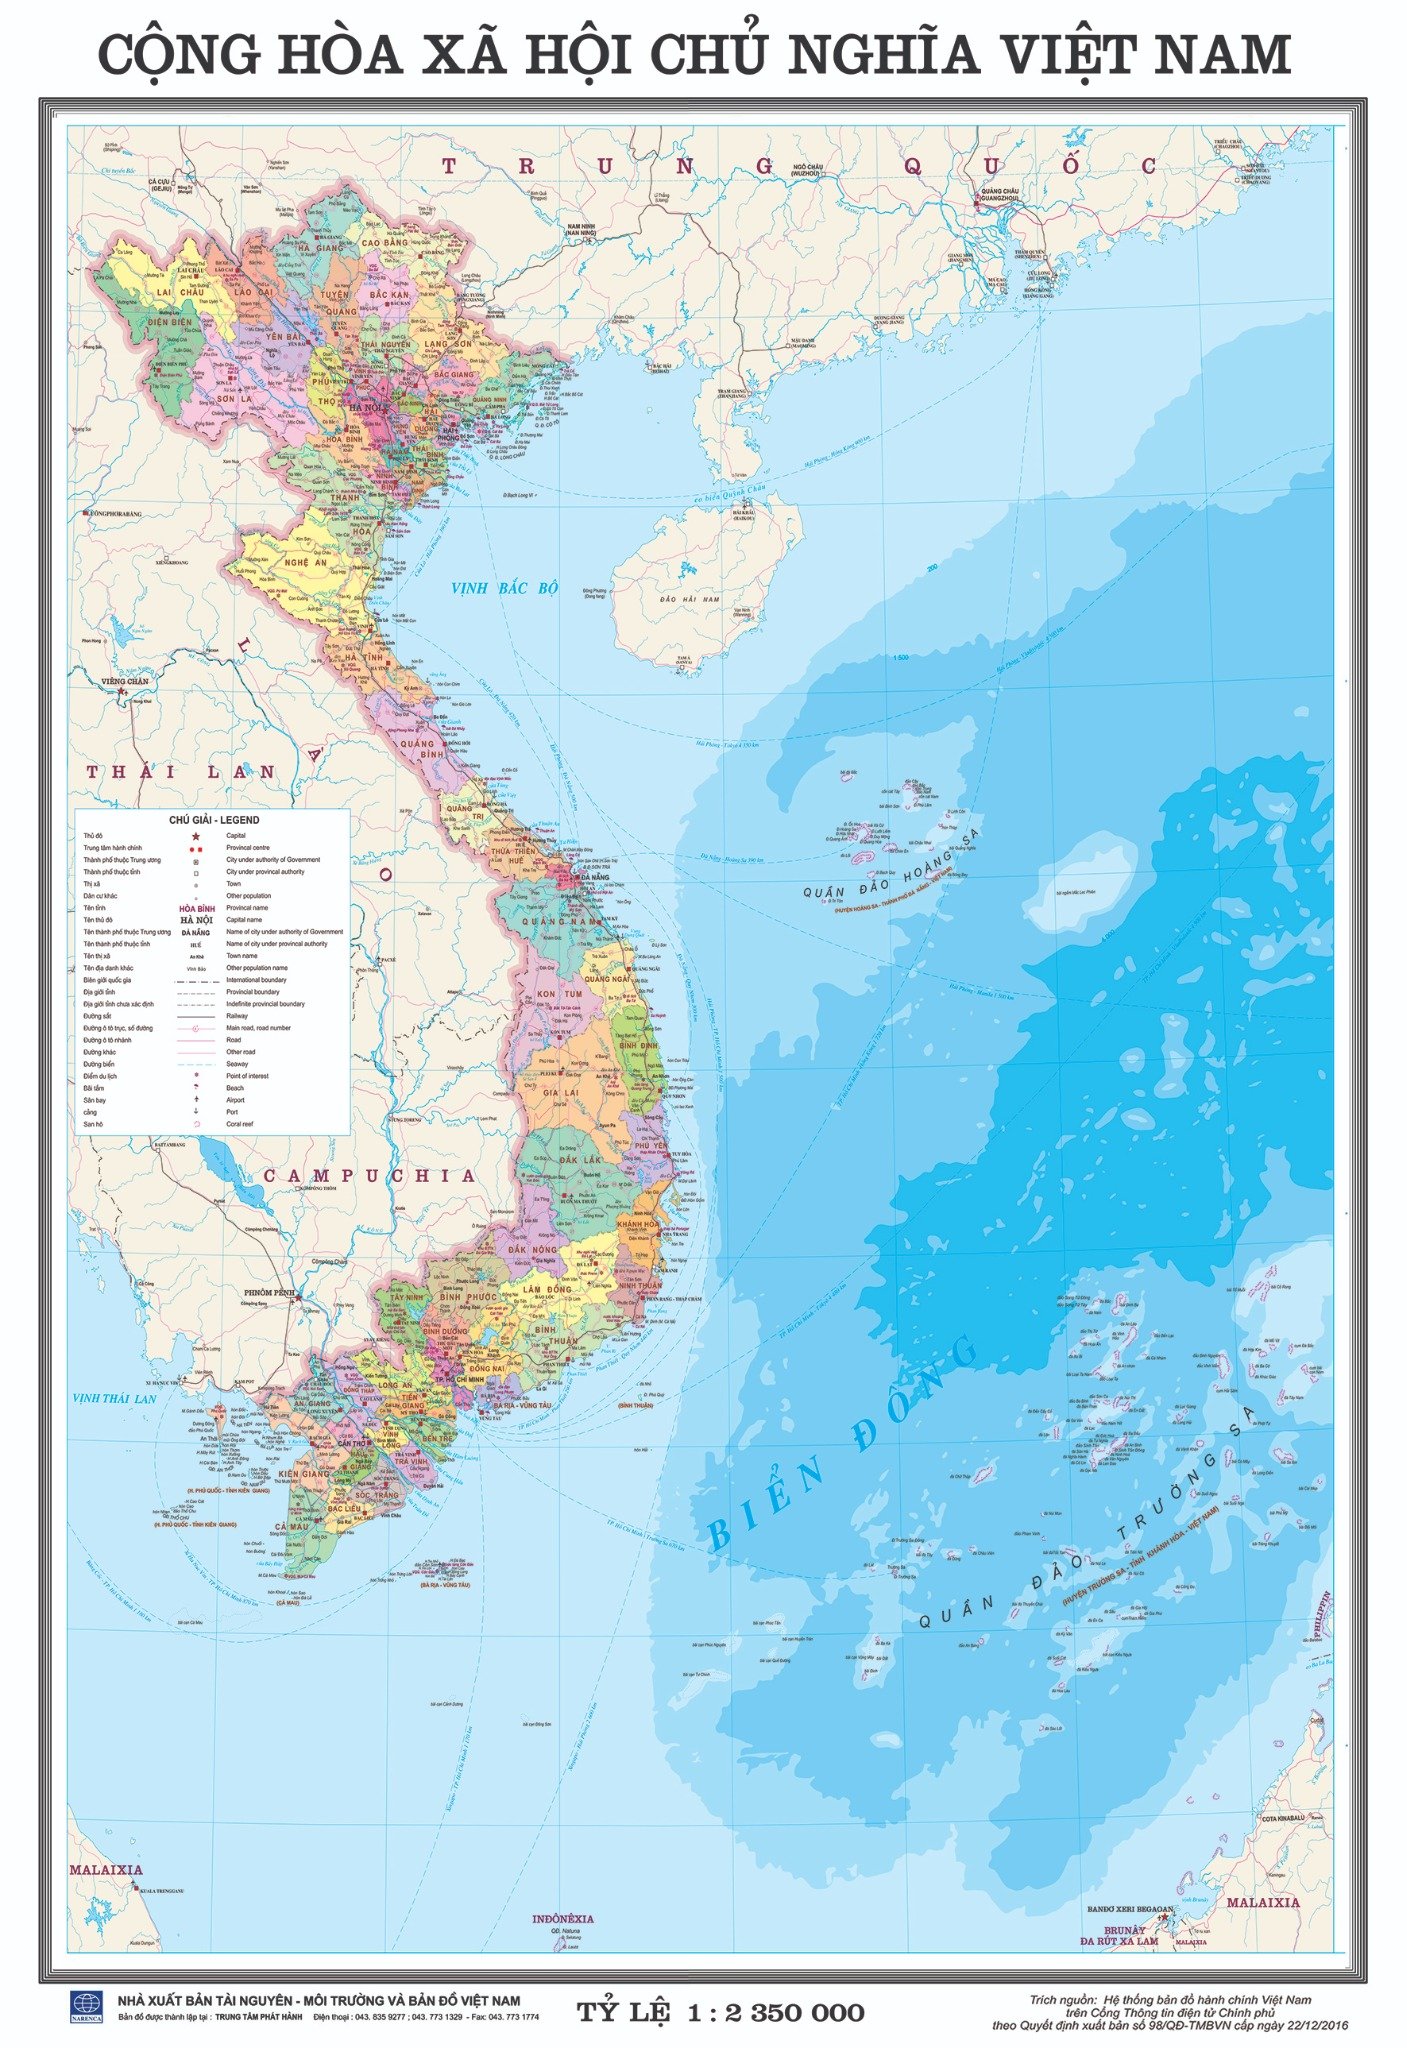 Bản đồ giao thông Việt Nam được cập nhật với dữ liệu liên tục về tình hình giao thông đường bộ, đường sắt và đường hàng không của đất nước. Đây là công cụ hữu ích cho những người thường xuyên lưu thông và đi lại trên toàn quốc.